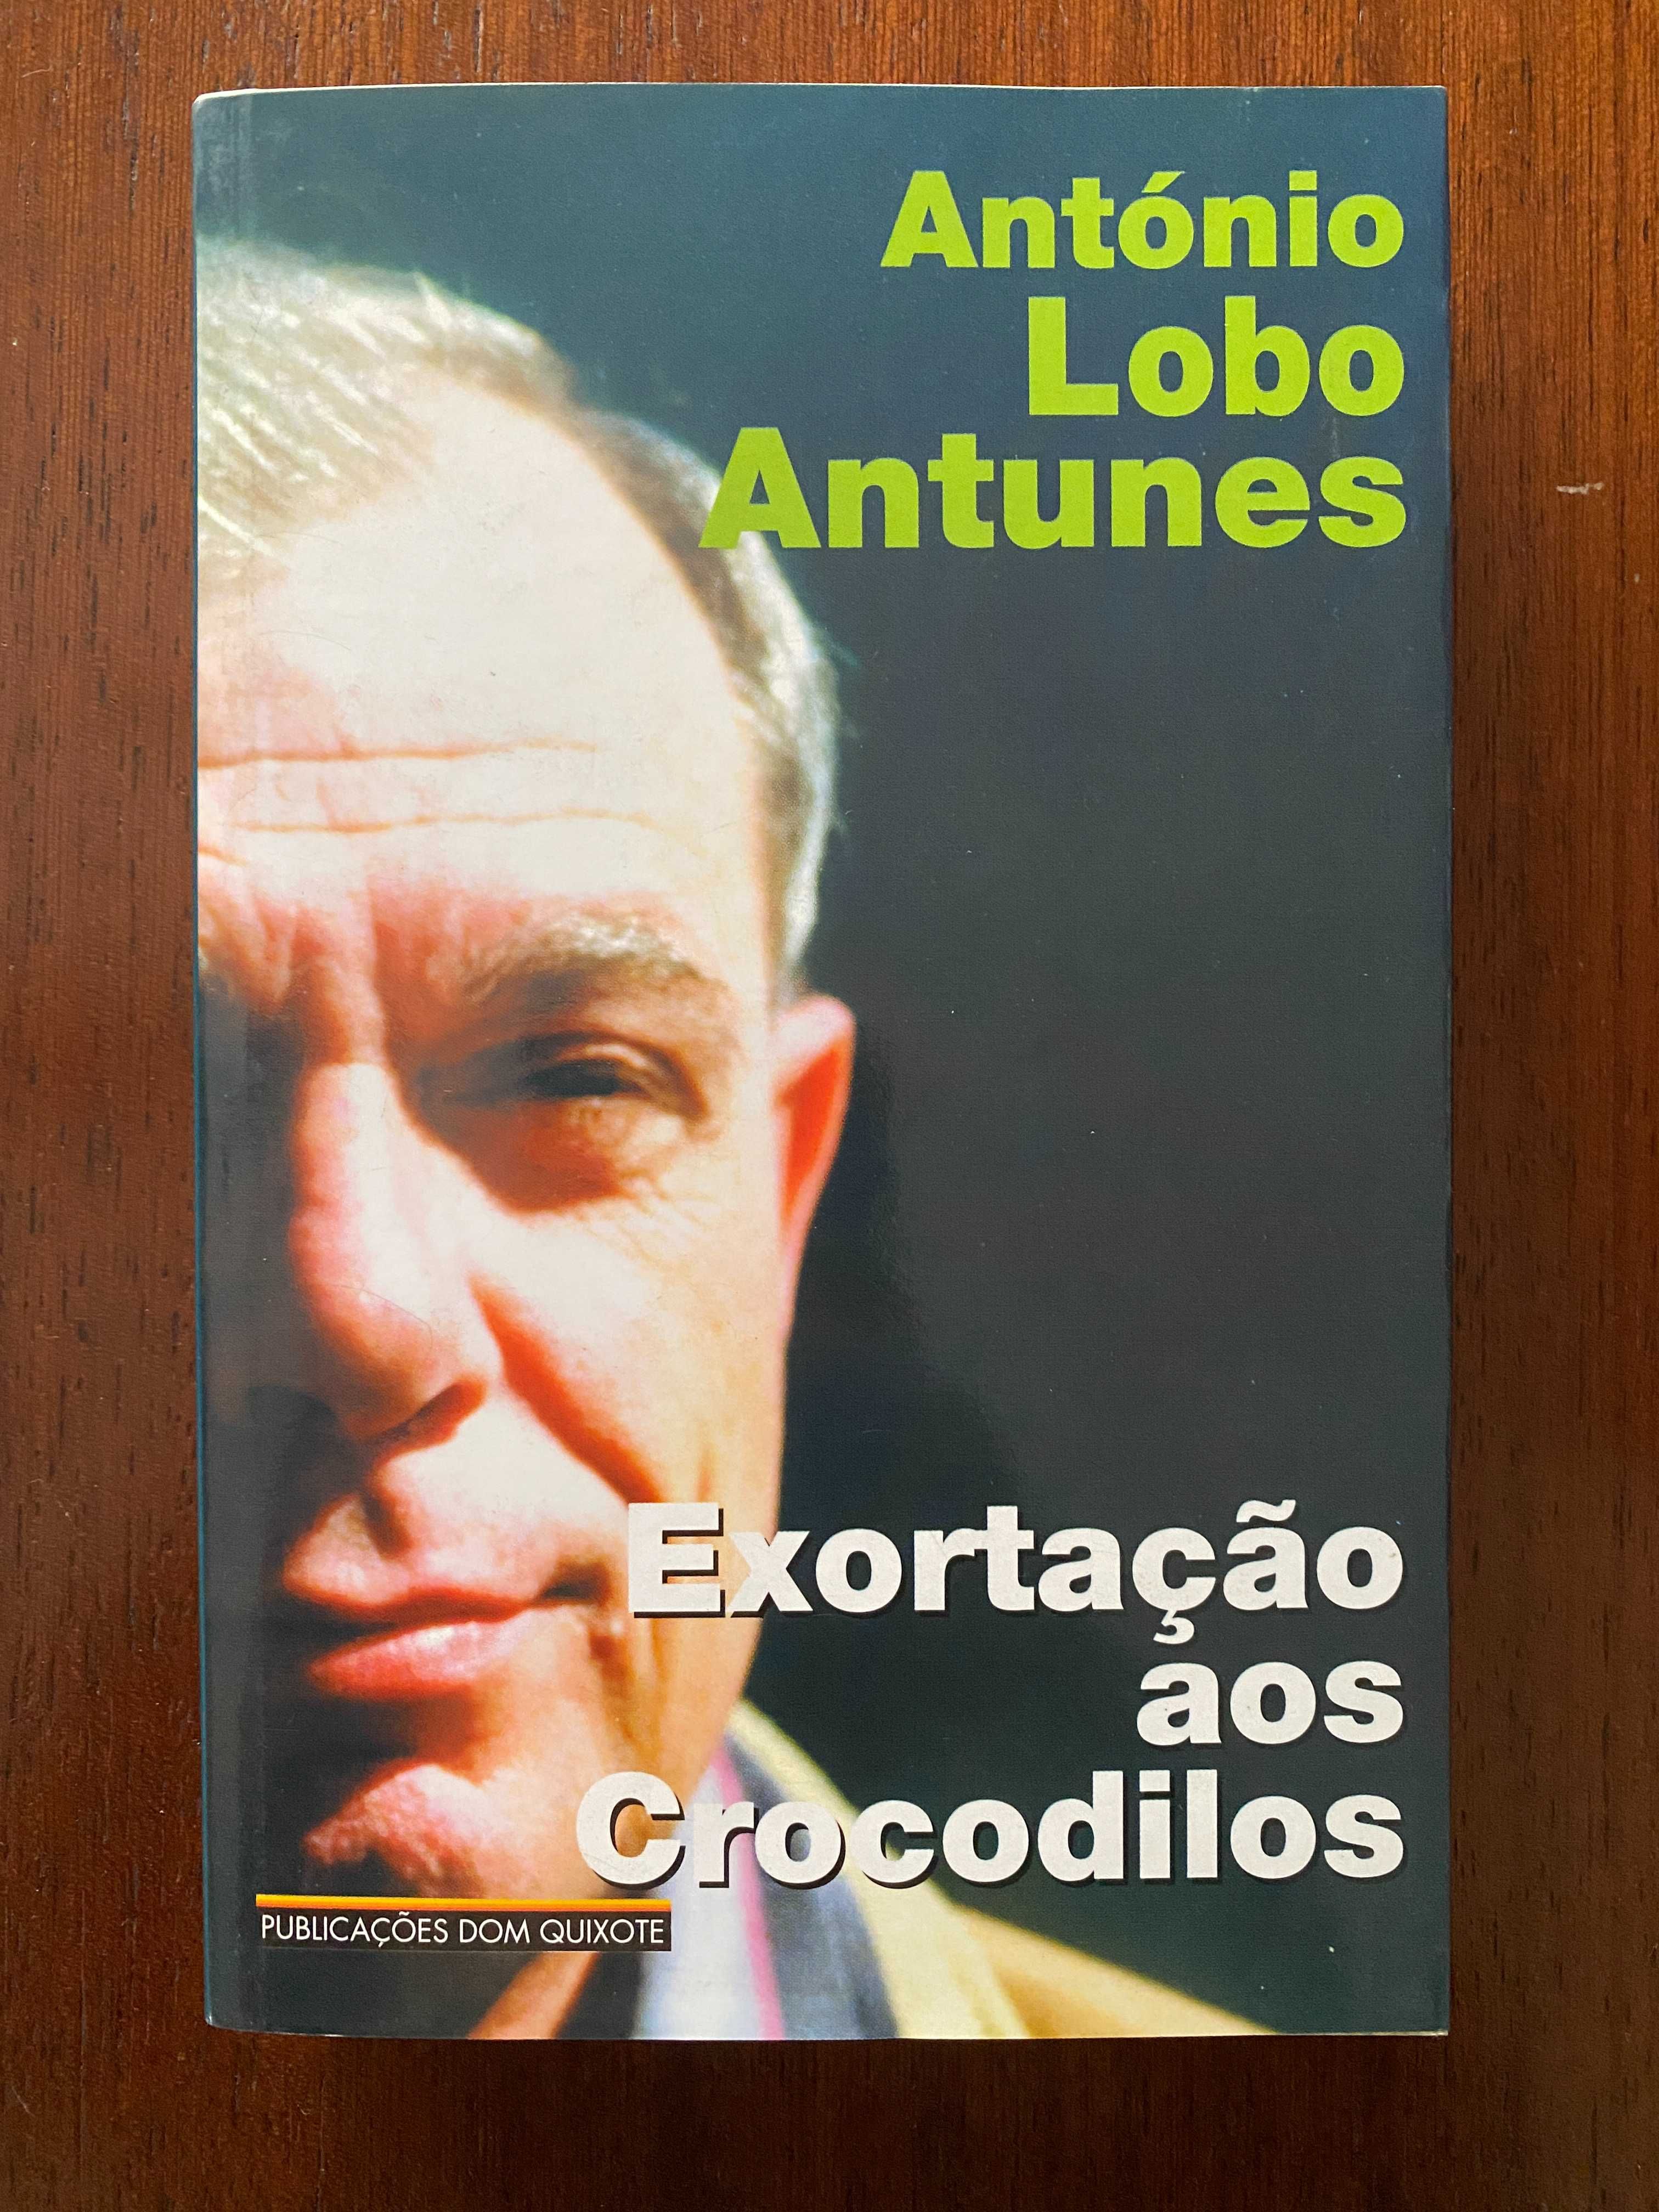 Exortação aos crocodilos, de António Lobo Antunes